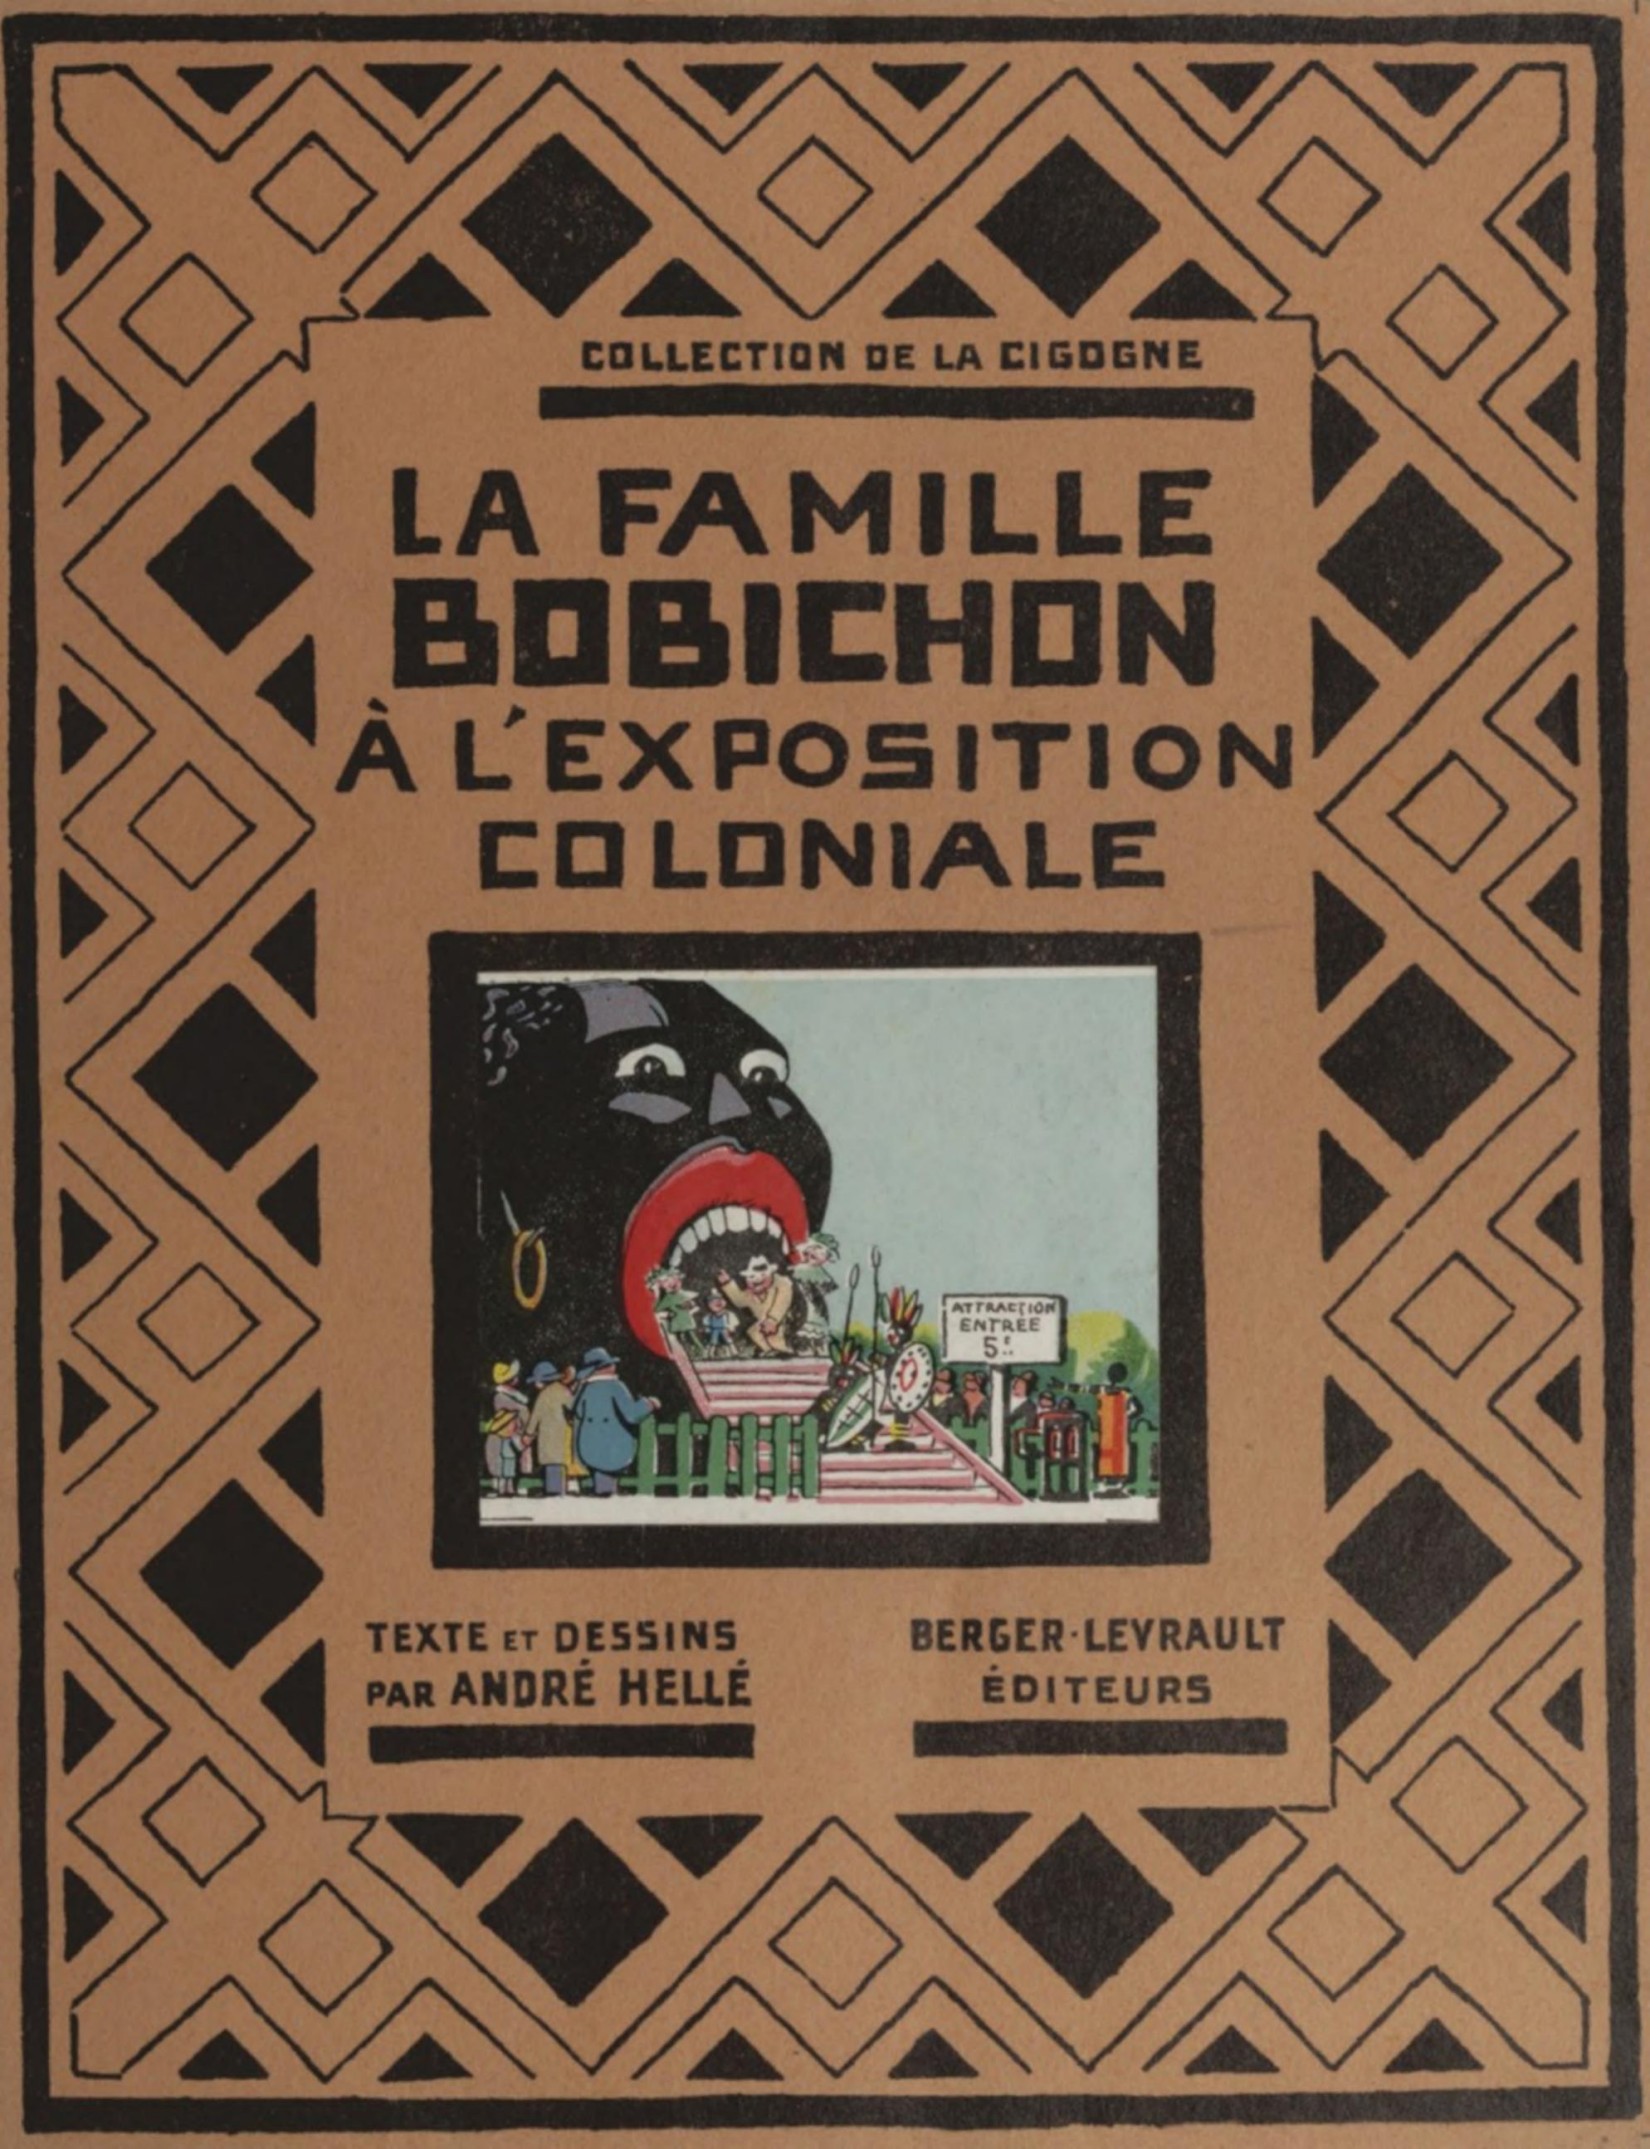 La famille Bobichon à l'éexposition coloniale